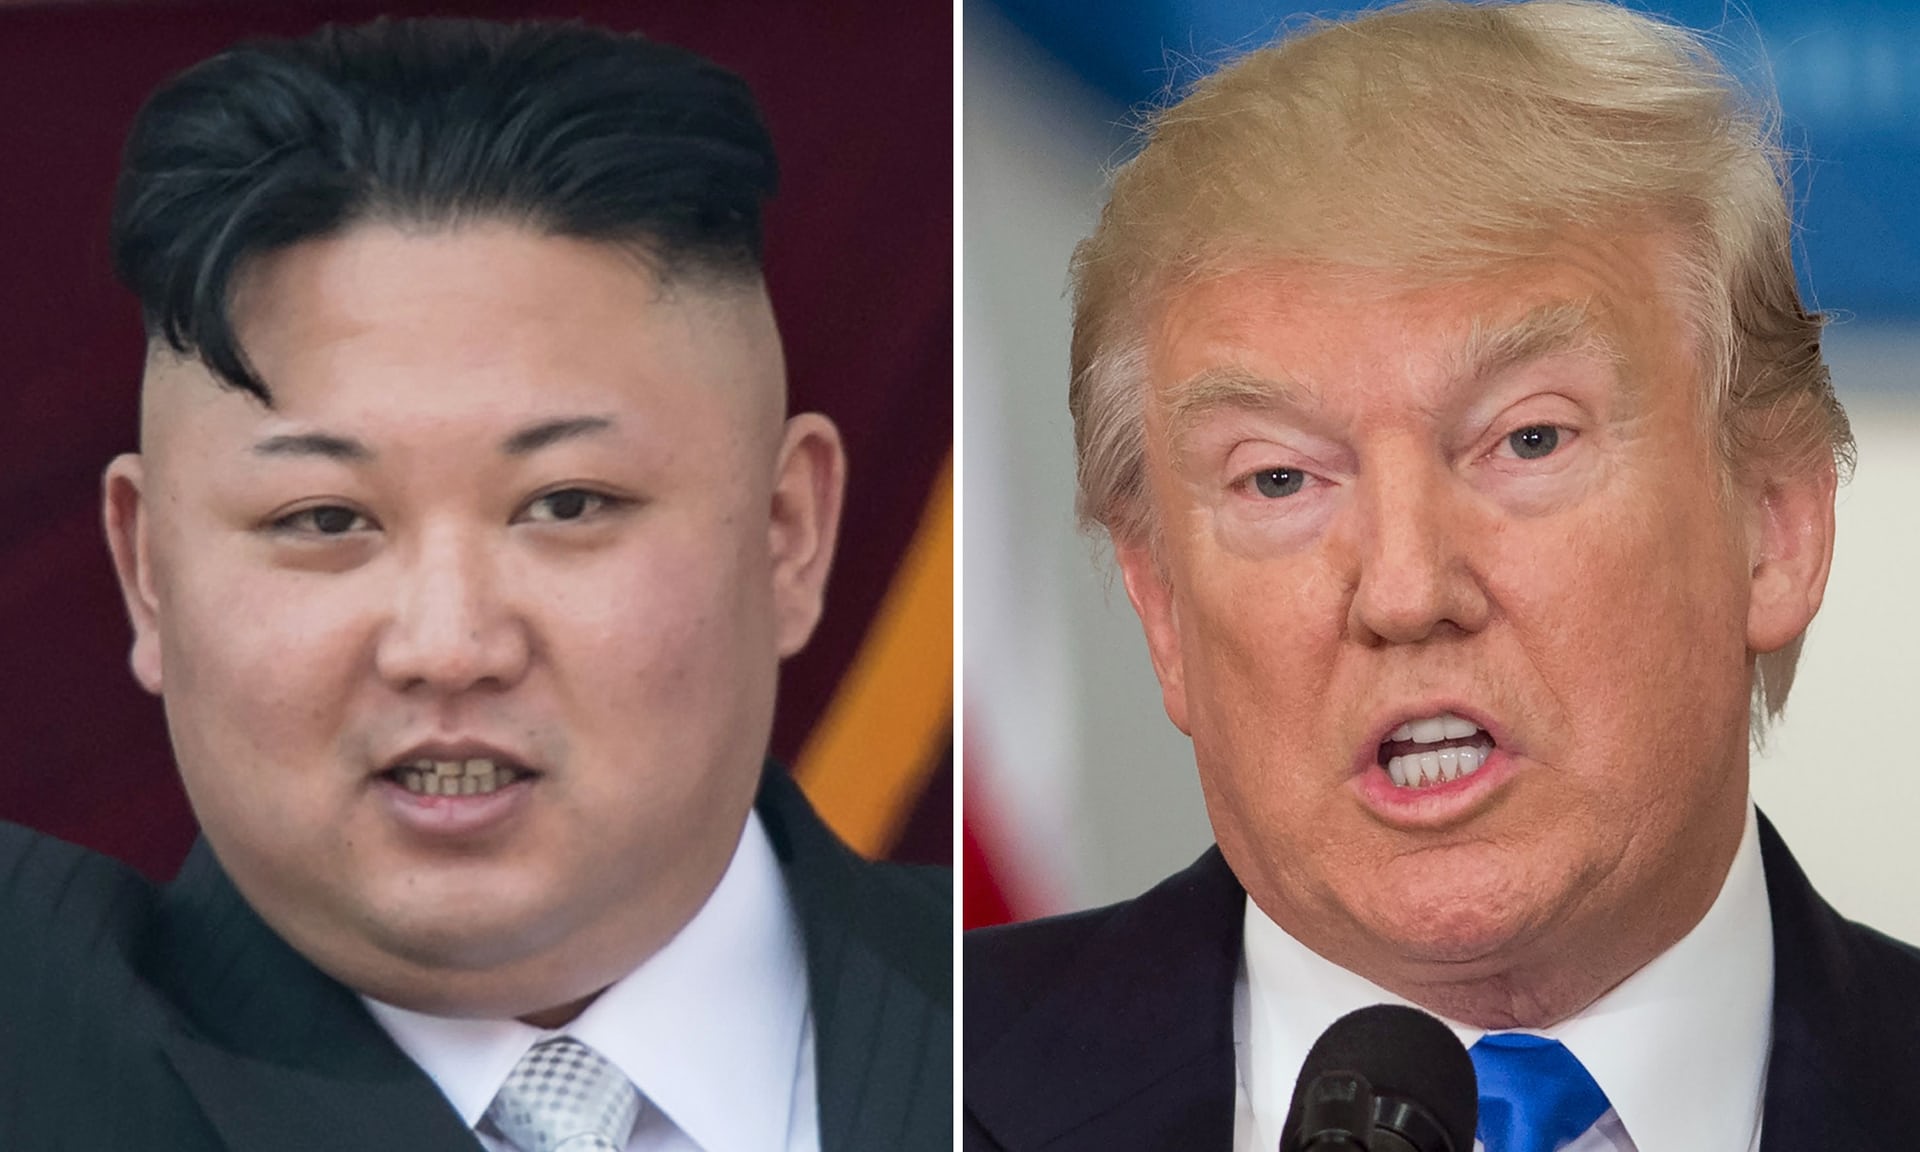 http://kanivatonga.nz/wp-content/uploads/2017/08/Trump-and-Kim.jpg